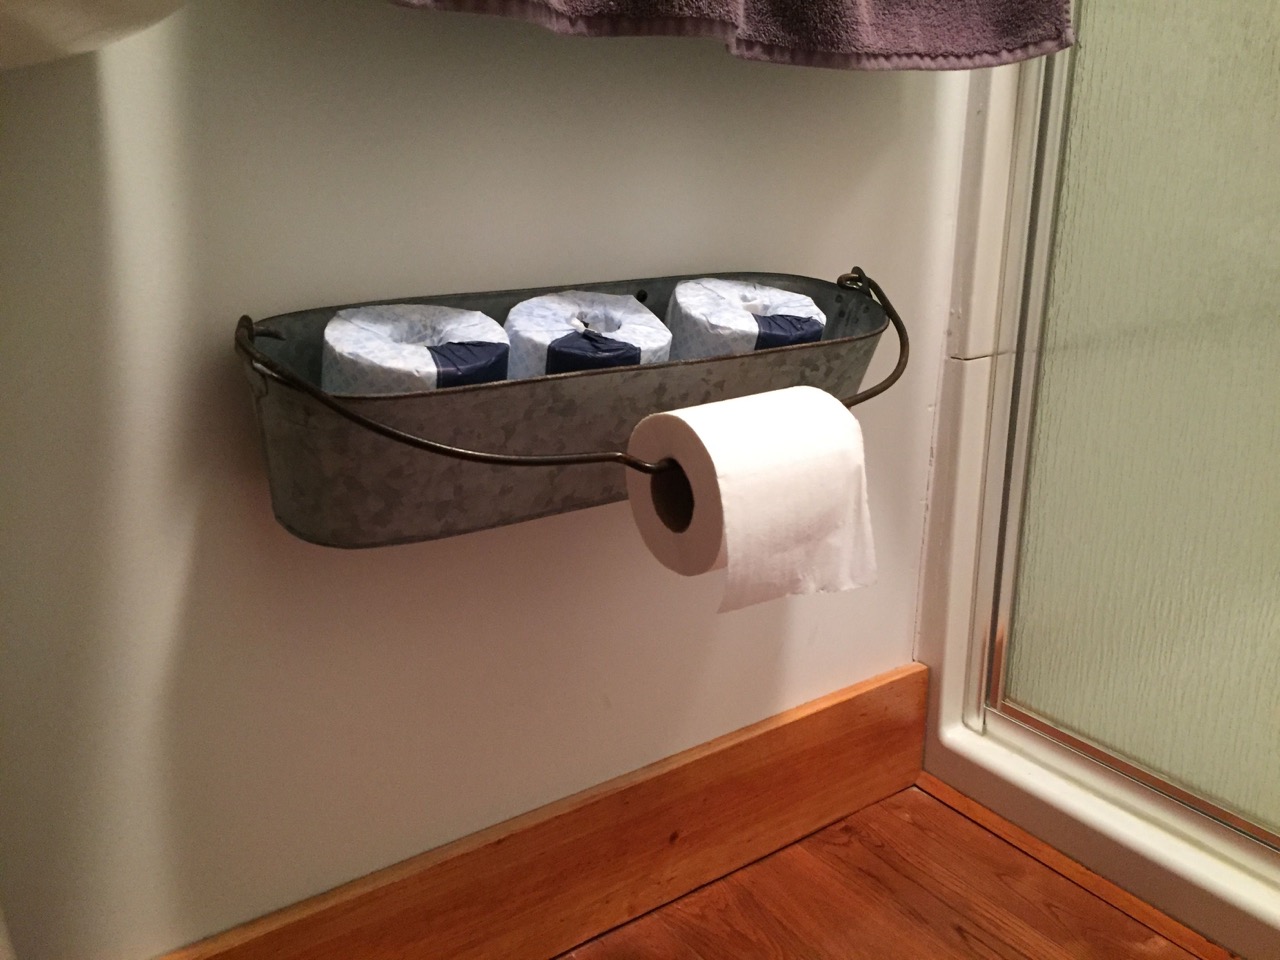 10 Best Toilet Tissue Holder for 2023